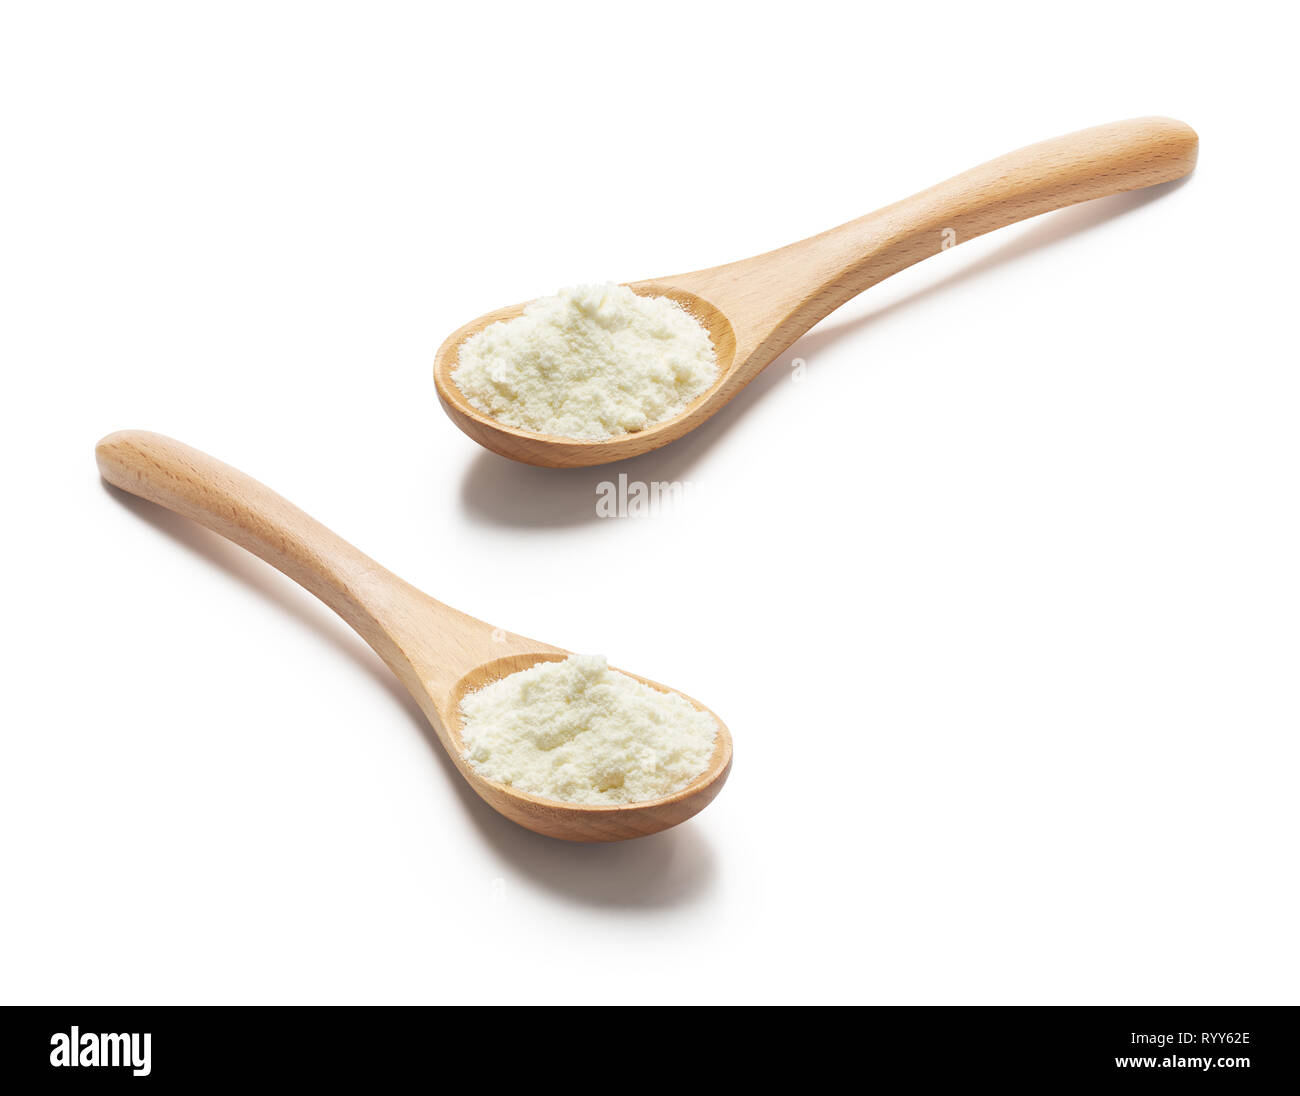 Cucchiaio di legno riempita con polvere di latte isolato su sfondo bianco Foto Stock